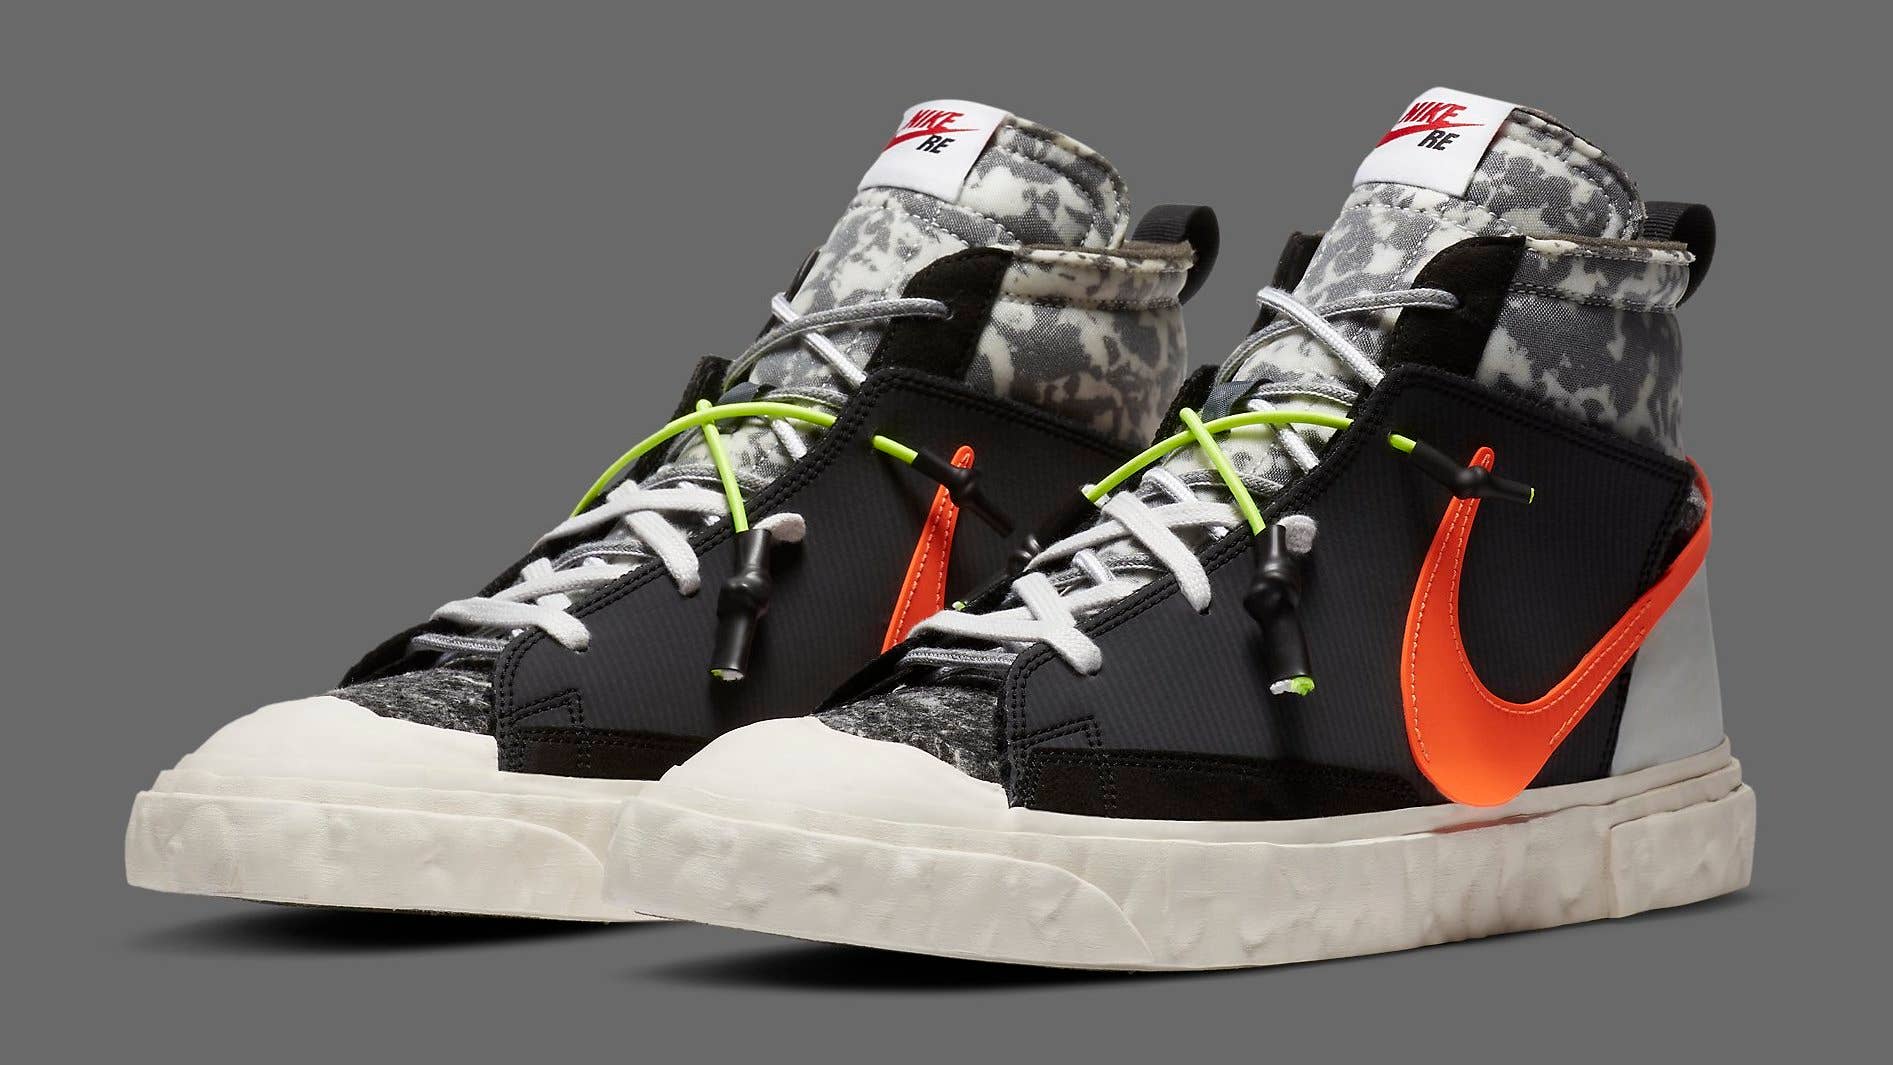 Readymade x Nike Blazer Mid CZ3589 001 Pair